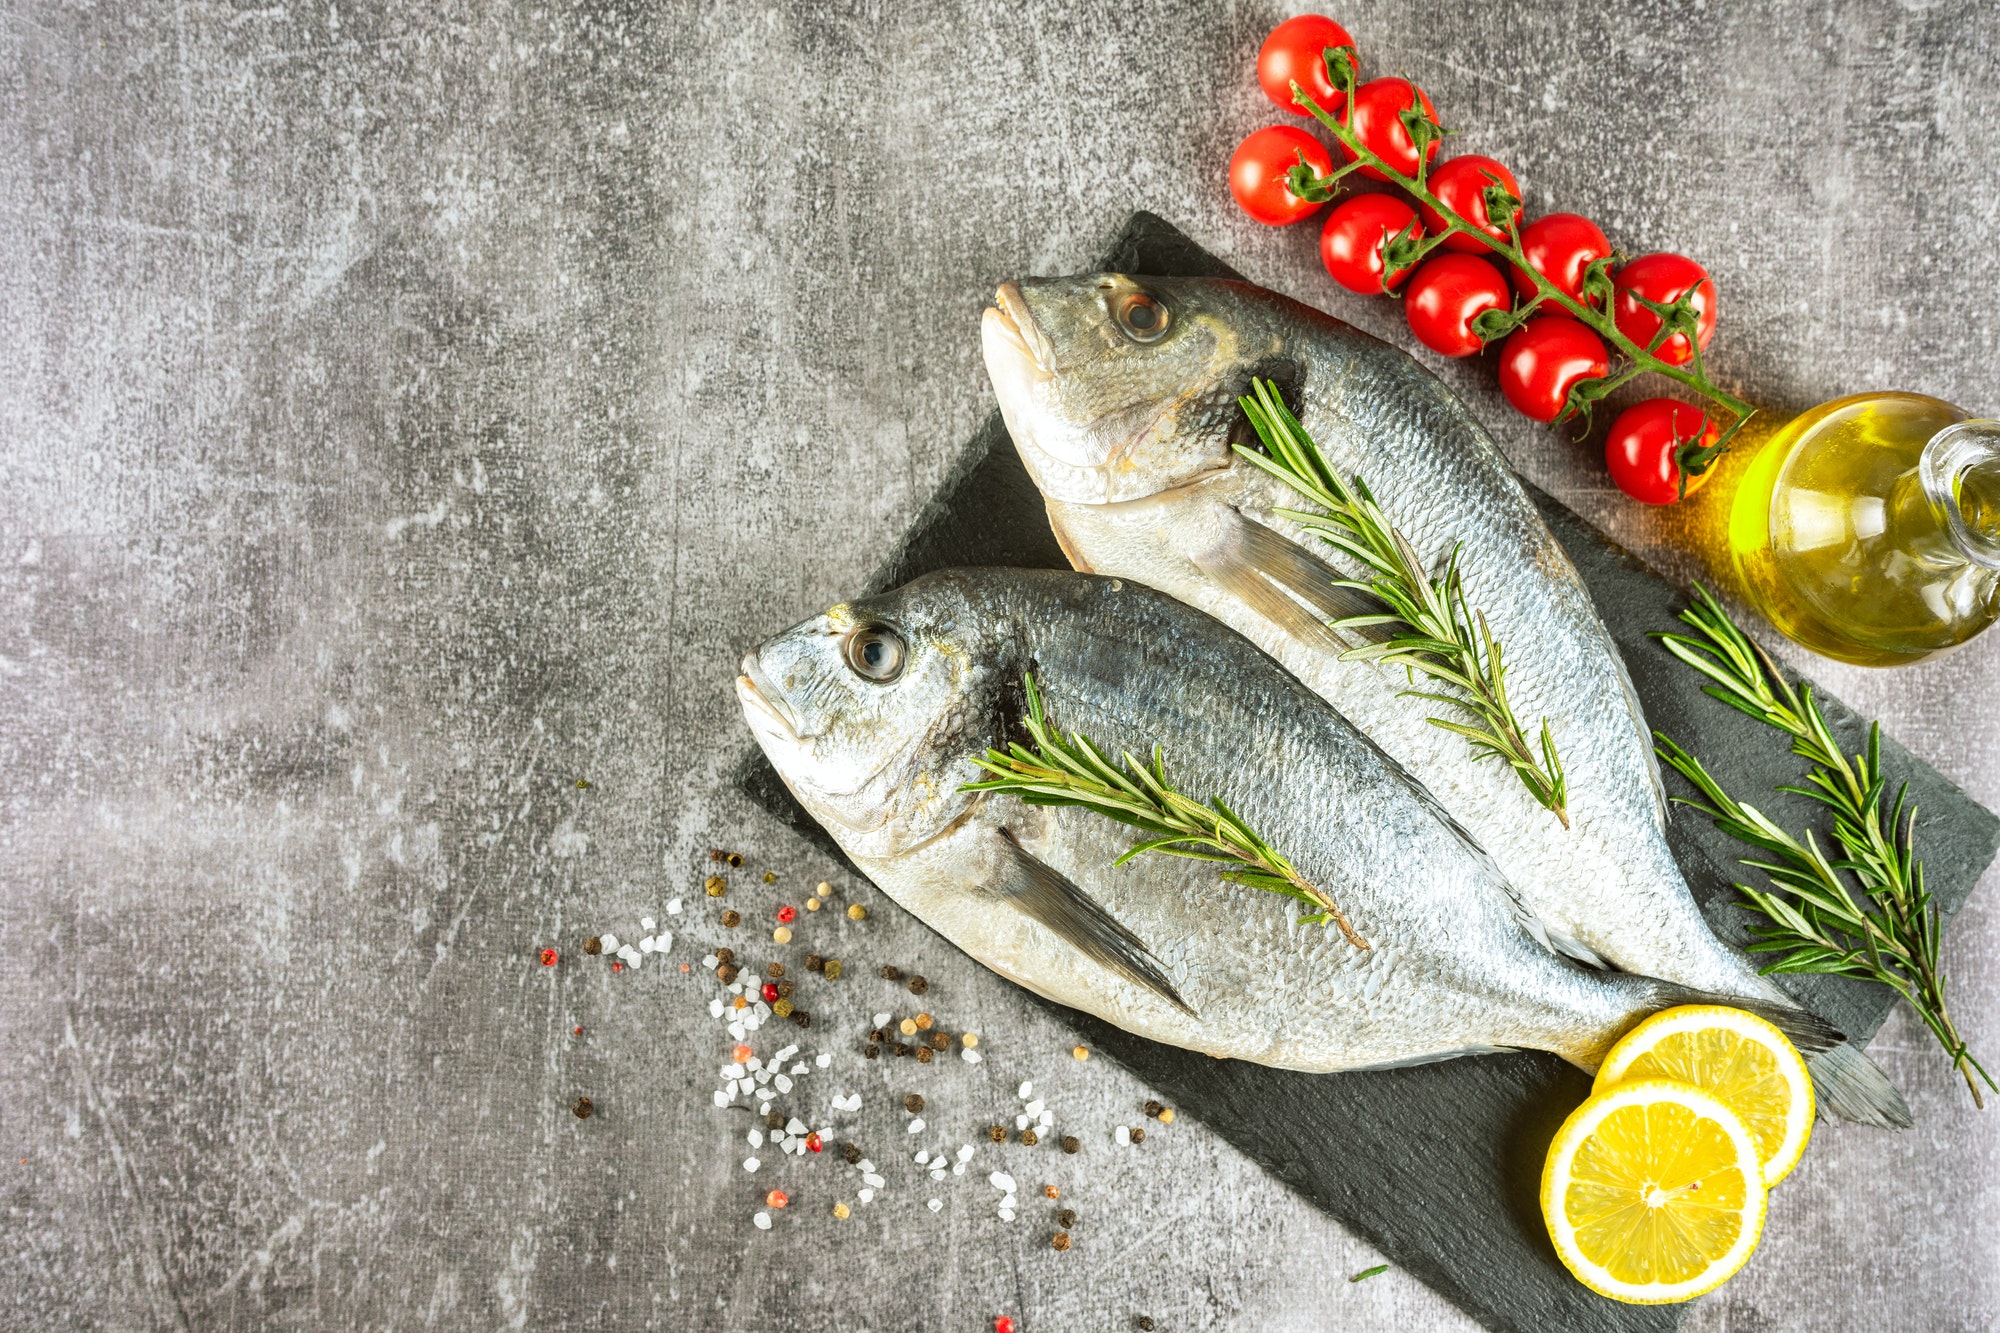 Quels sont les poissons les plus courant en cuisine?